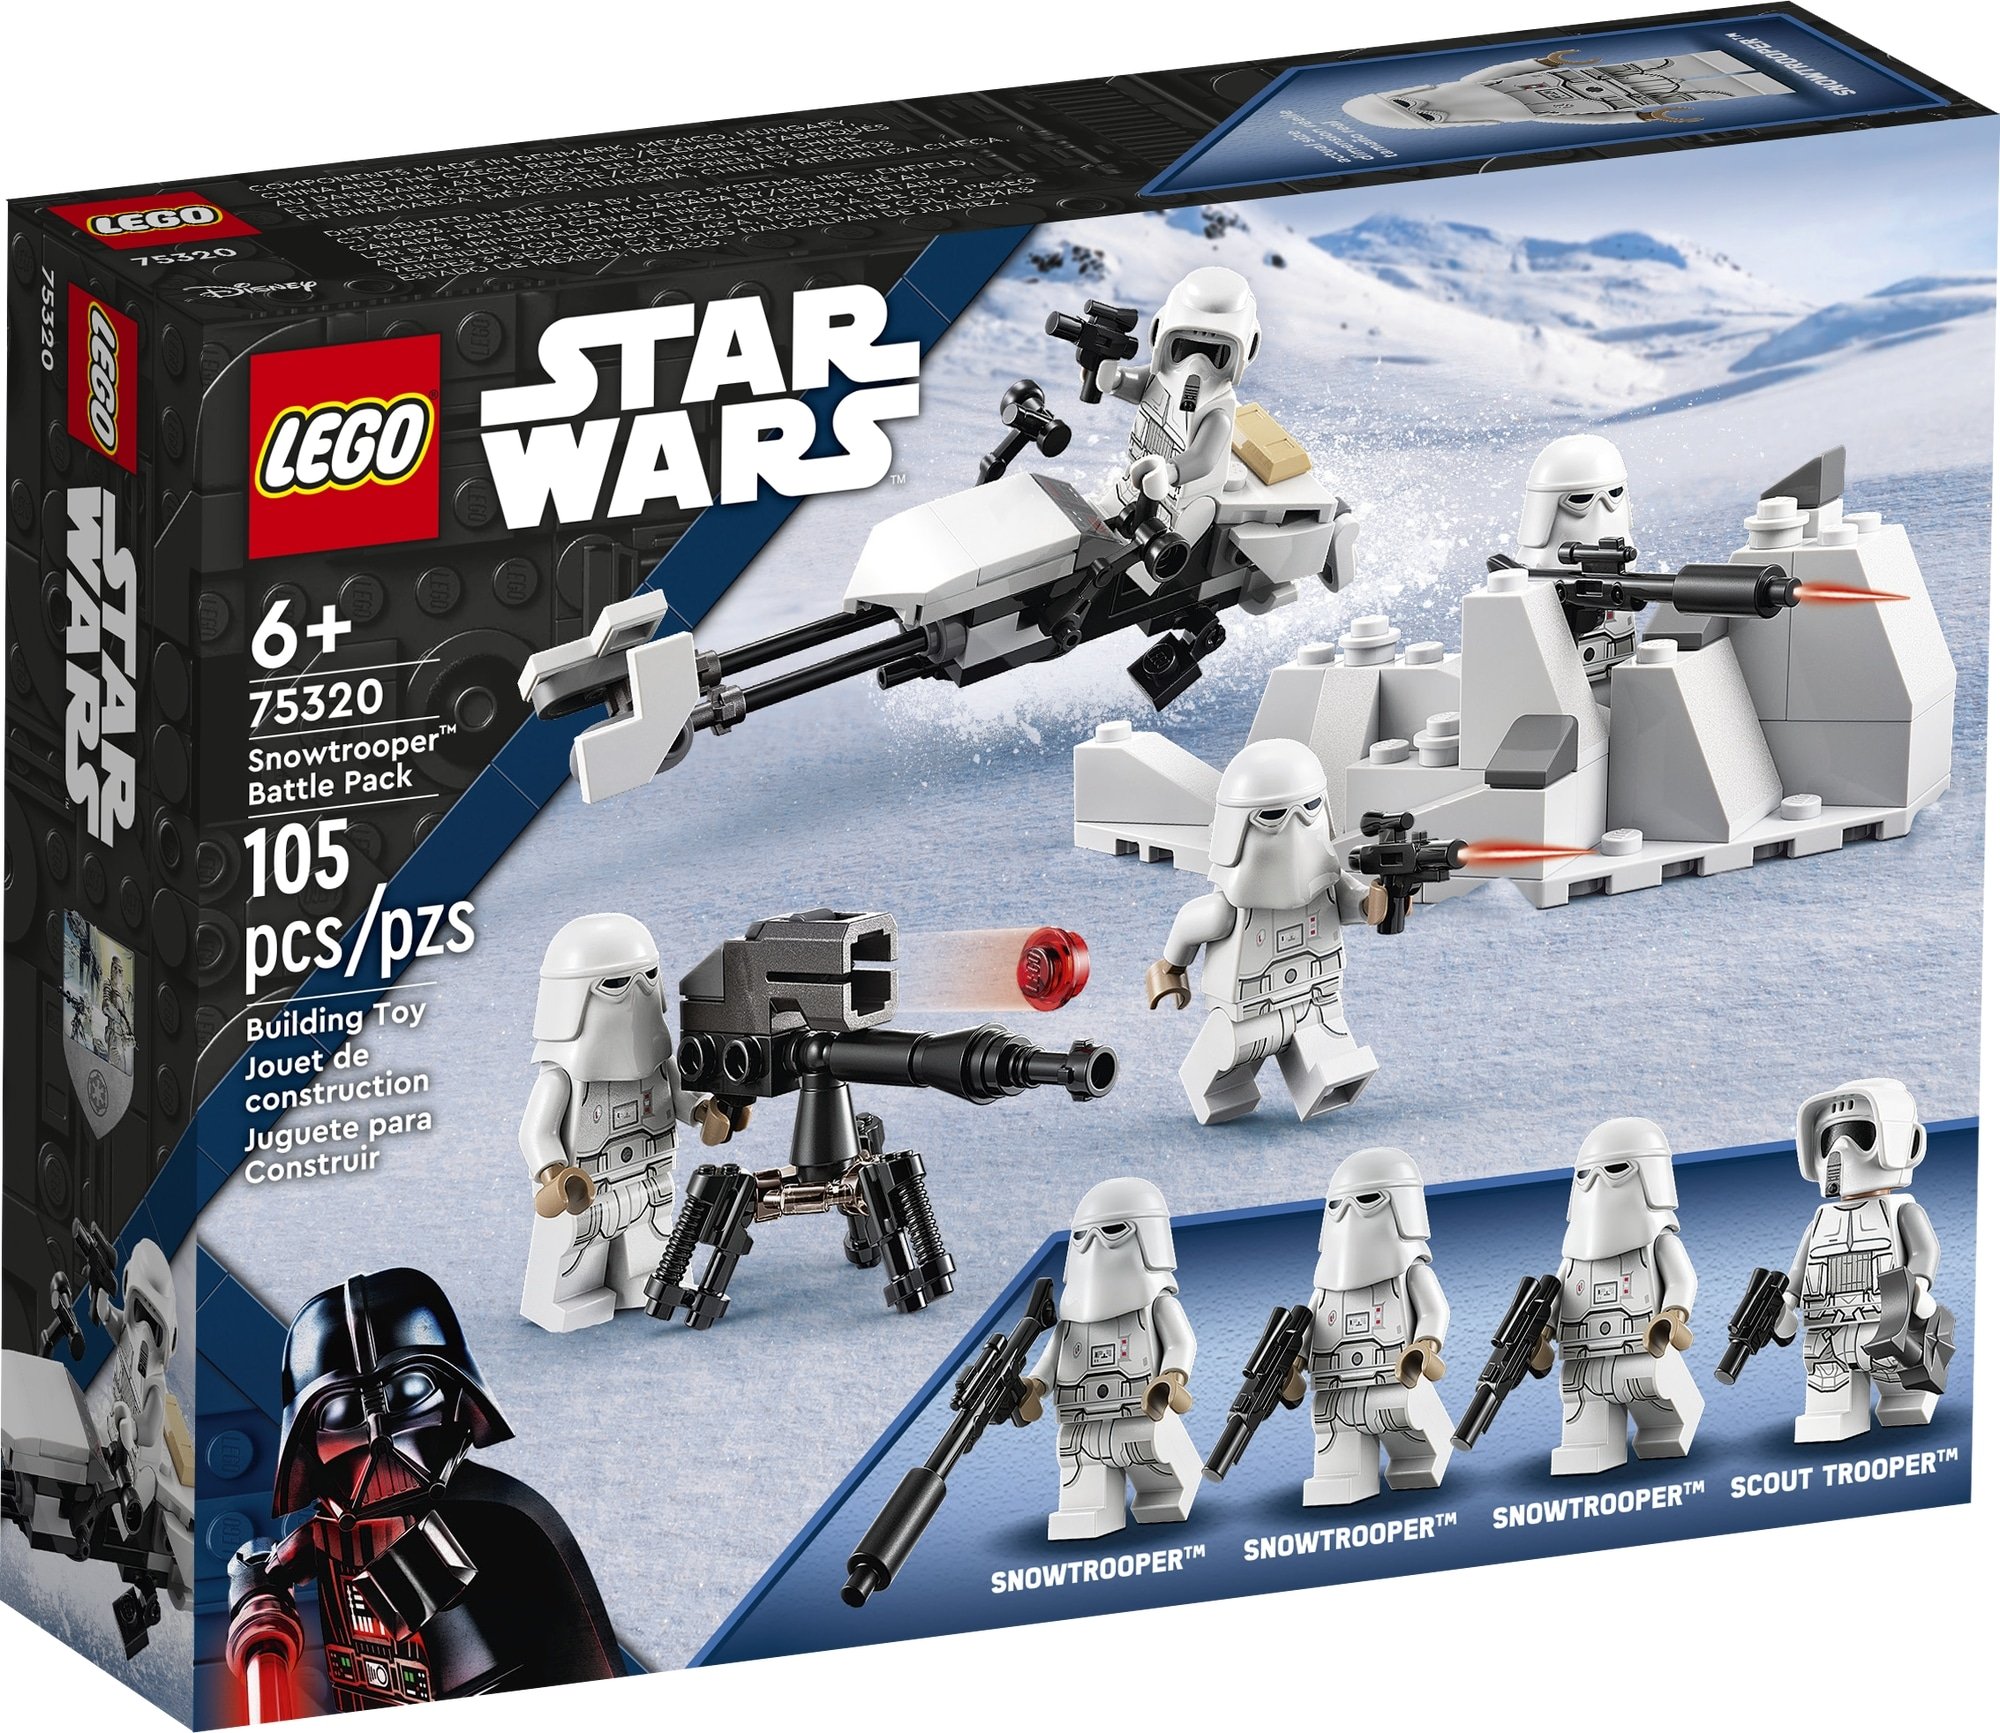 Endor Lego Star Wars RebellenAuswahlFigurenMinifigurenHoth